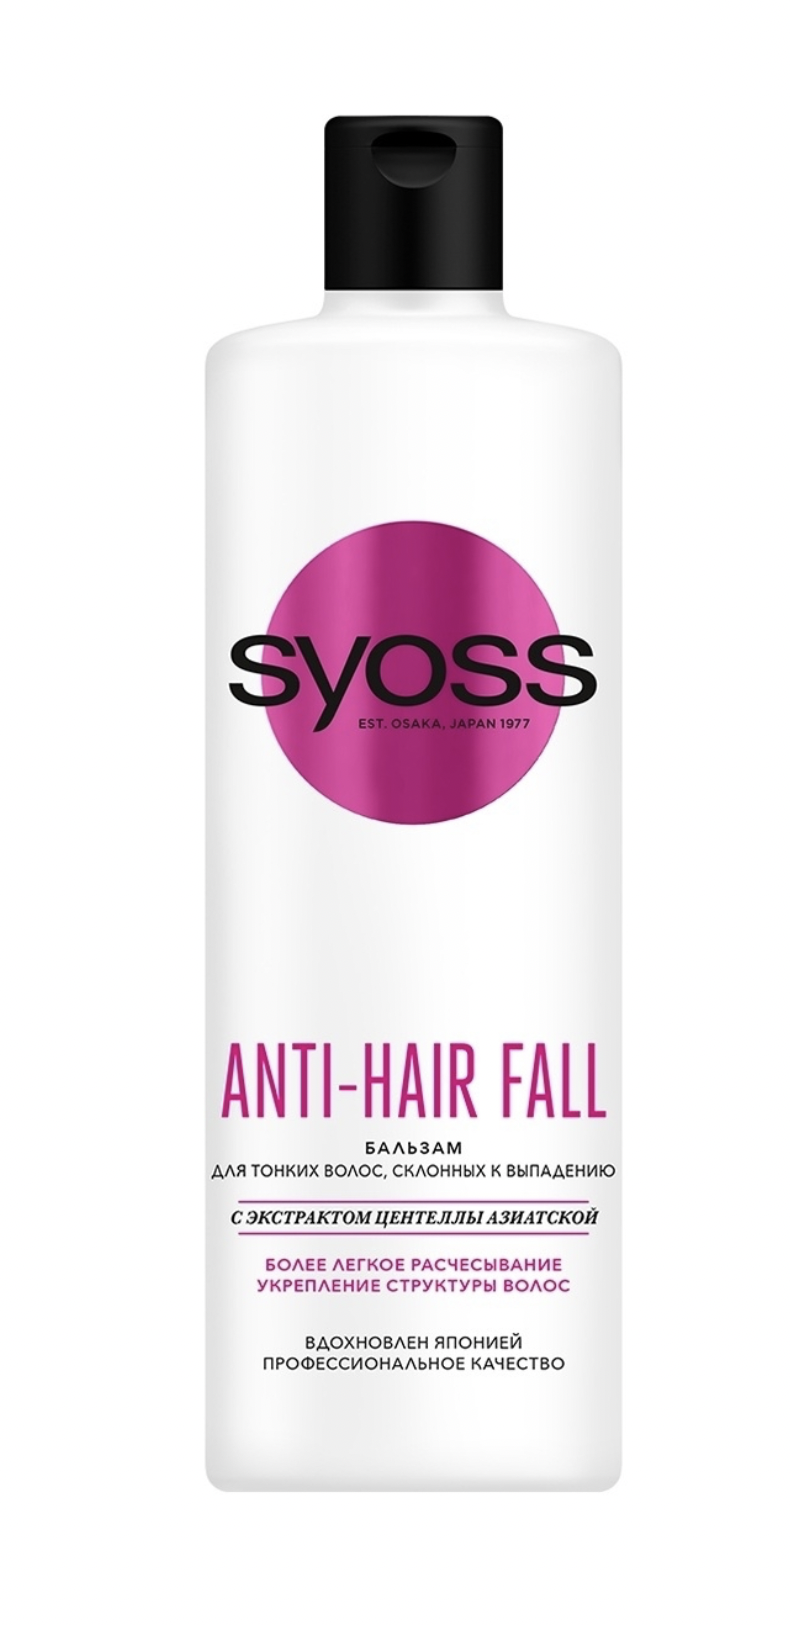   / Syoss Anti-Hair Fall -        450 